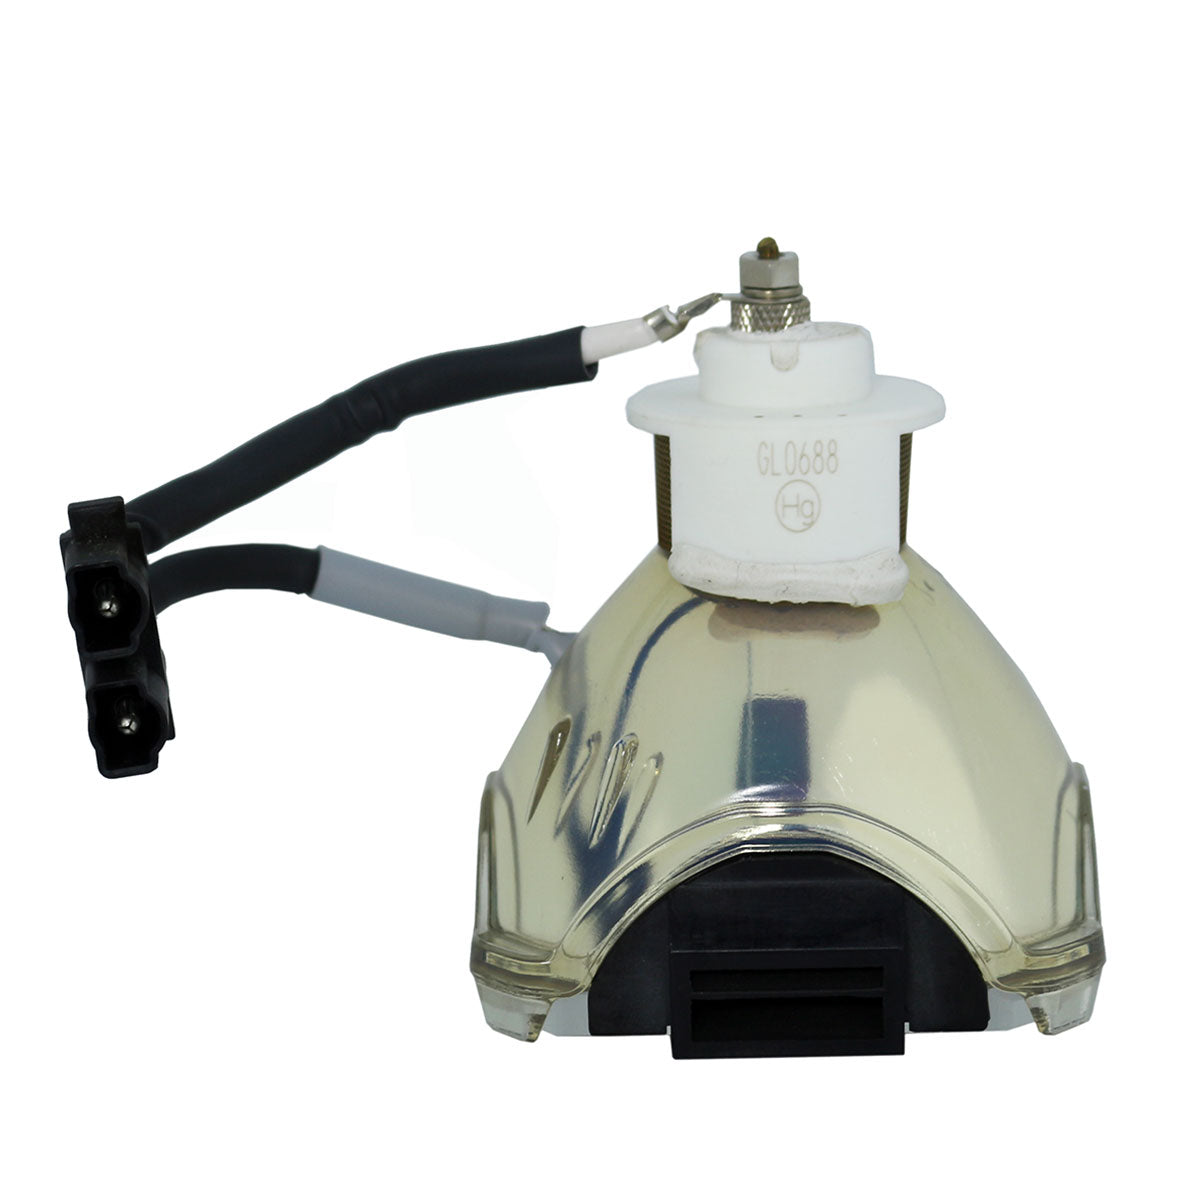 3M 78-6969-9718-4 Ushio Projector Bare Lamp